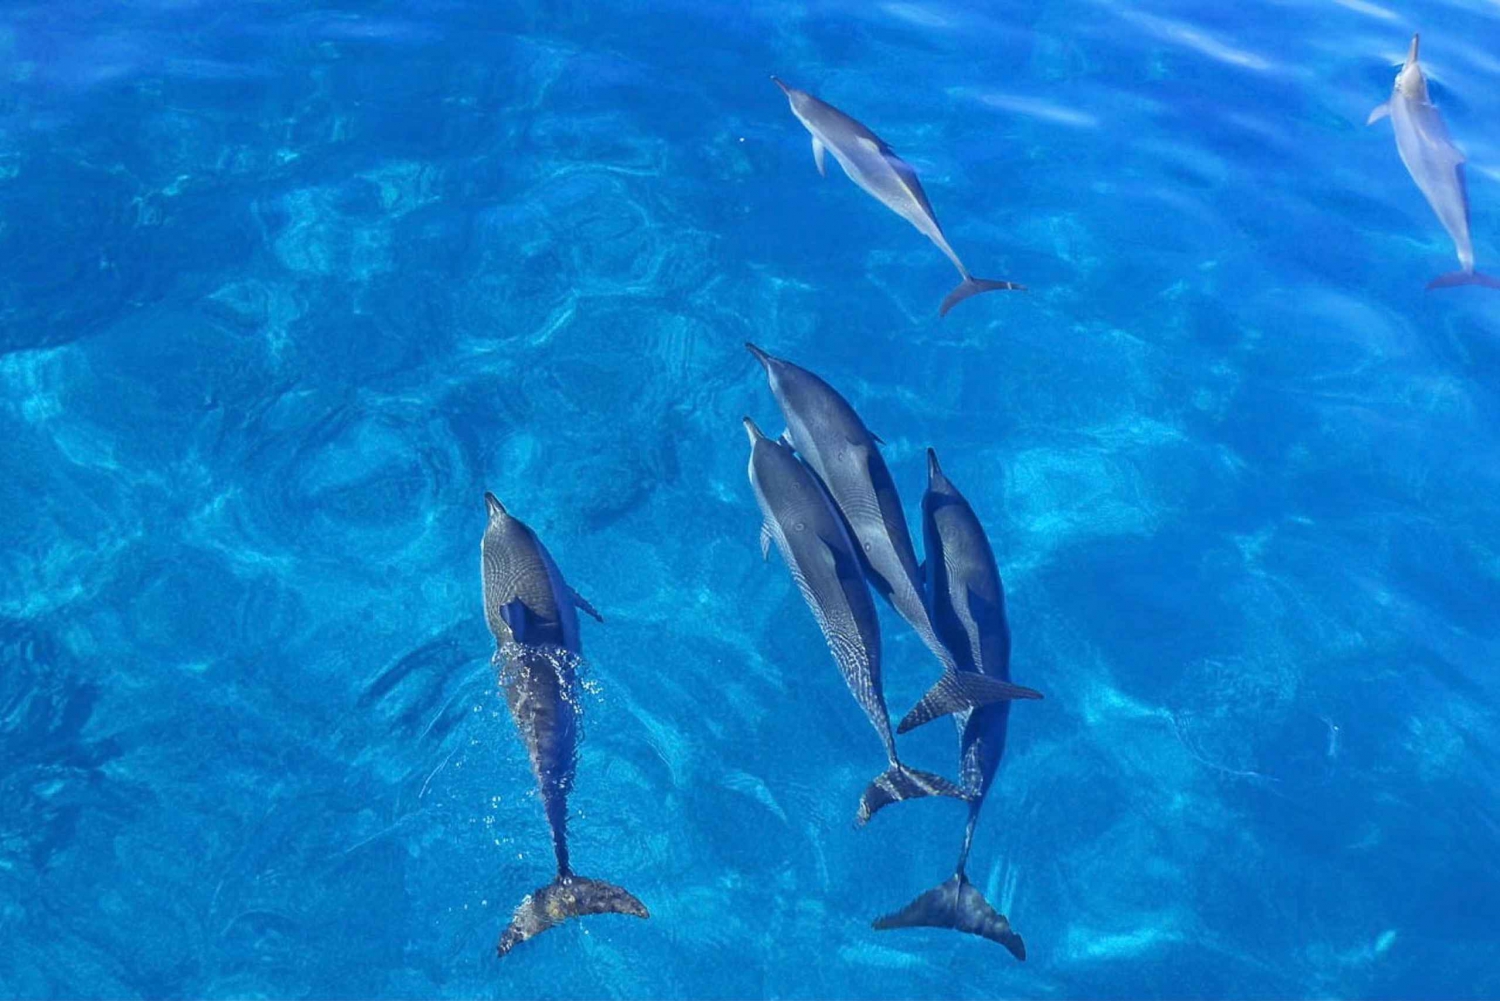 Oahu: Delfinsvømning og snorkeltur i speedbåd